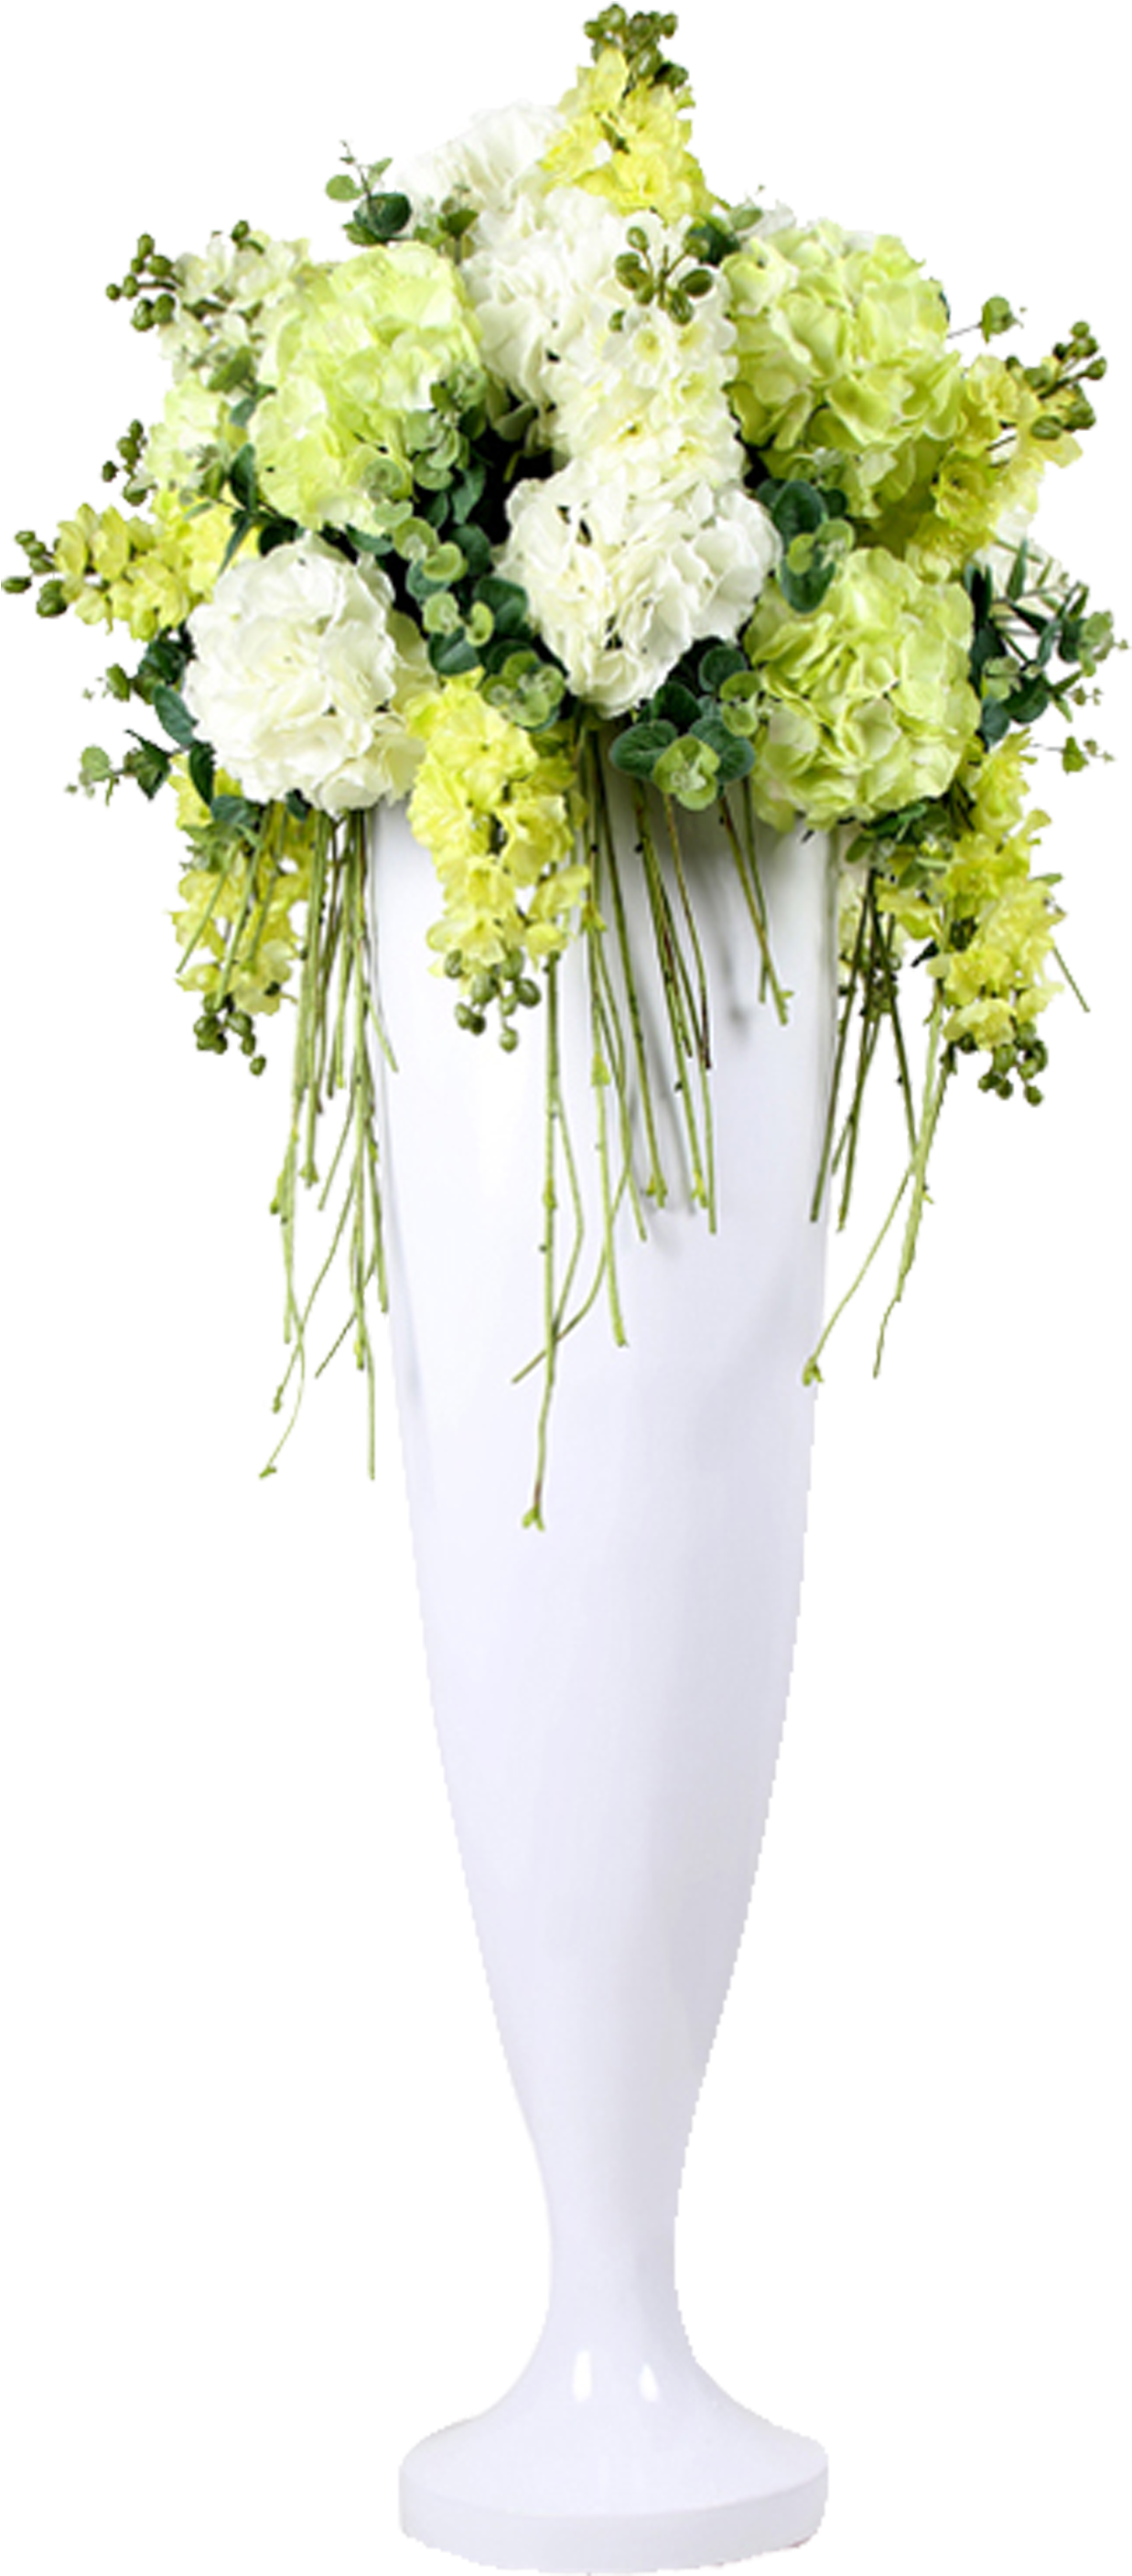 Floral Design Vase Wedding Flower Bouquet - Portable Network Graphics (2655x3924)